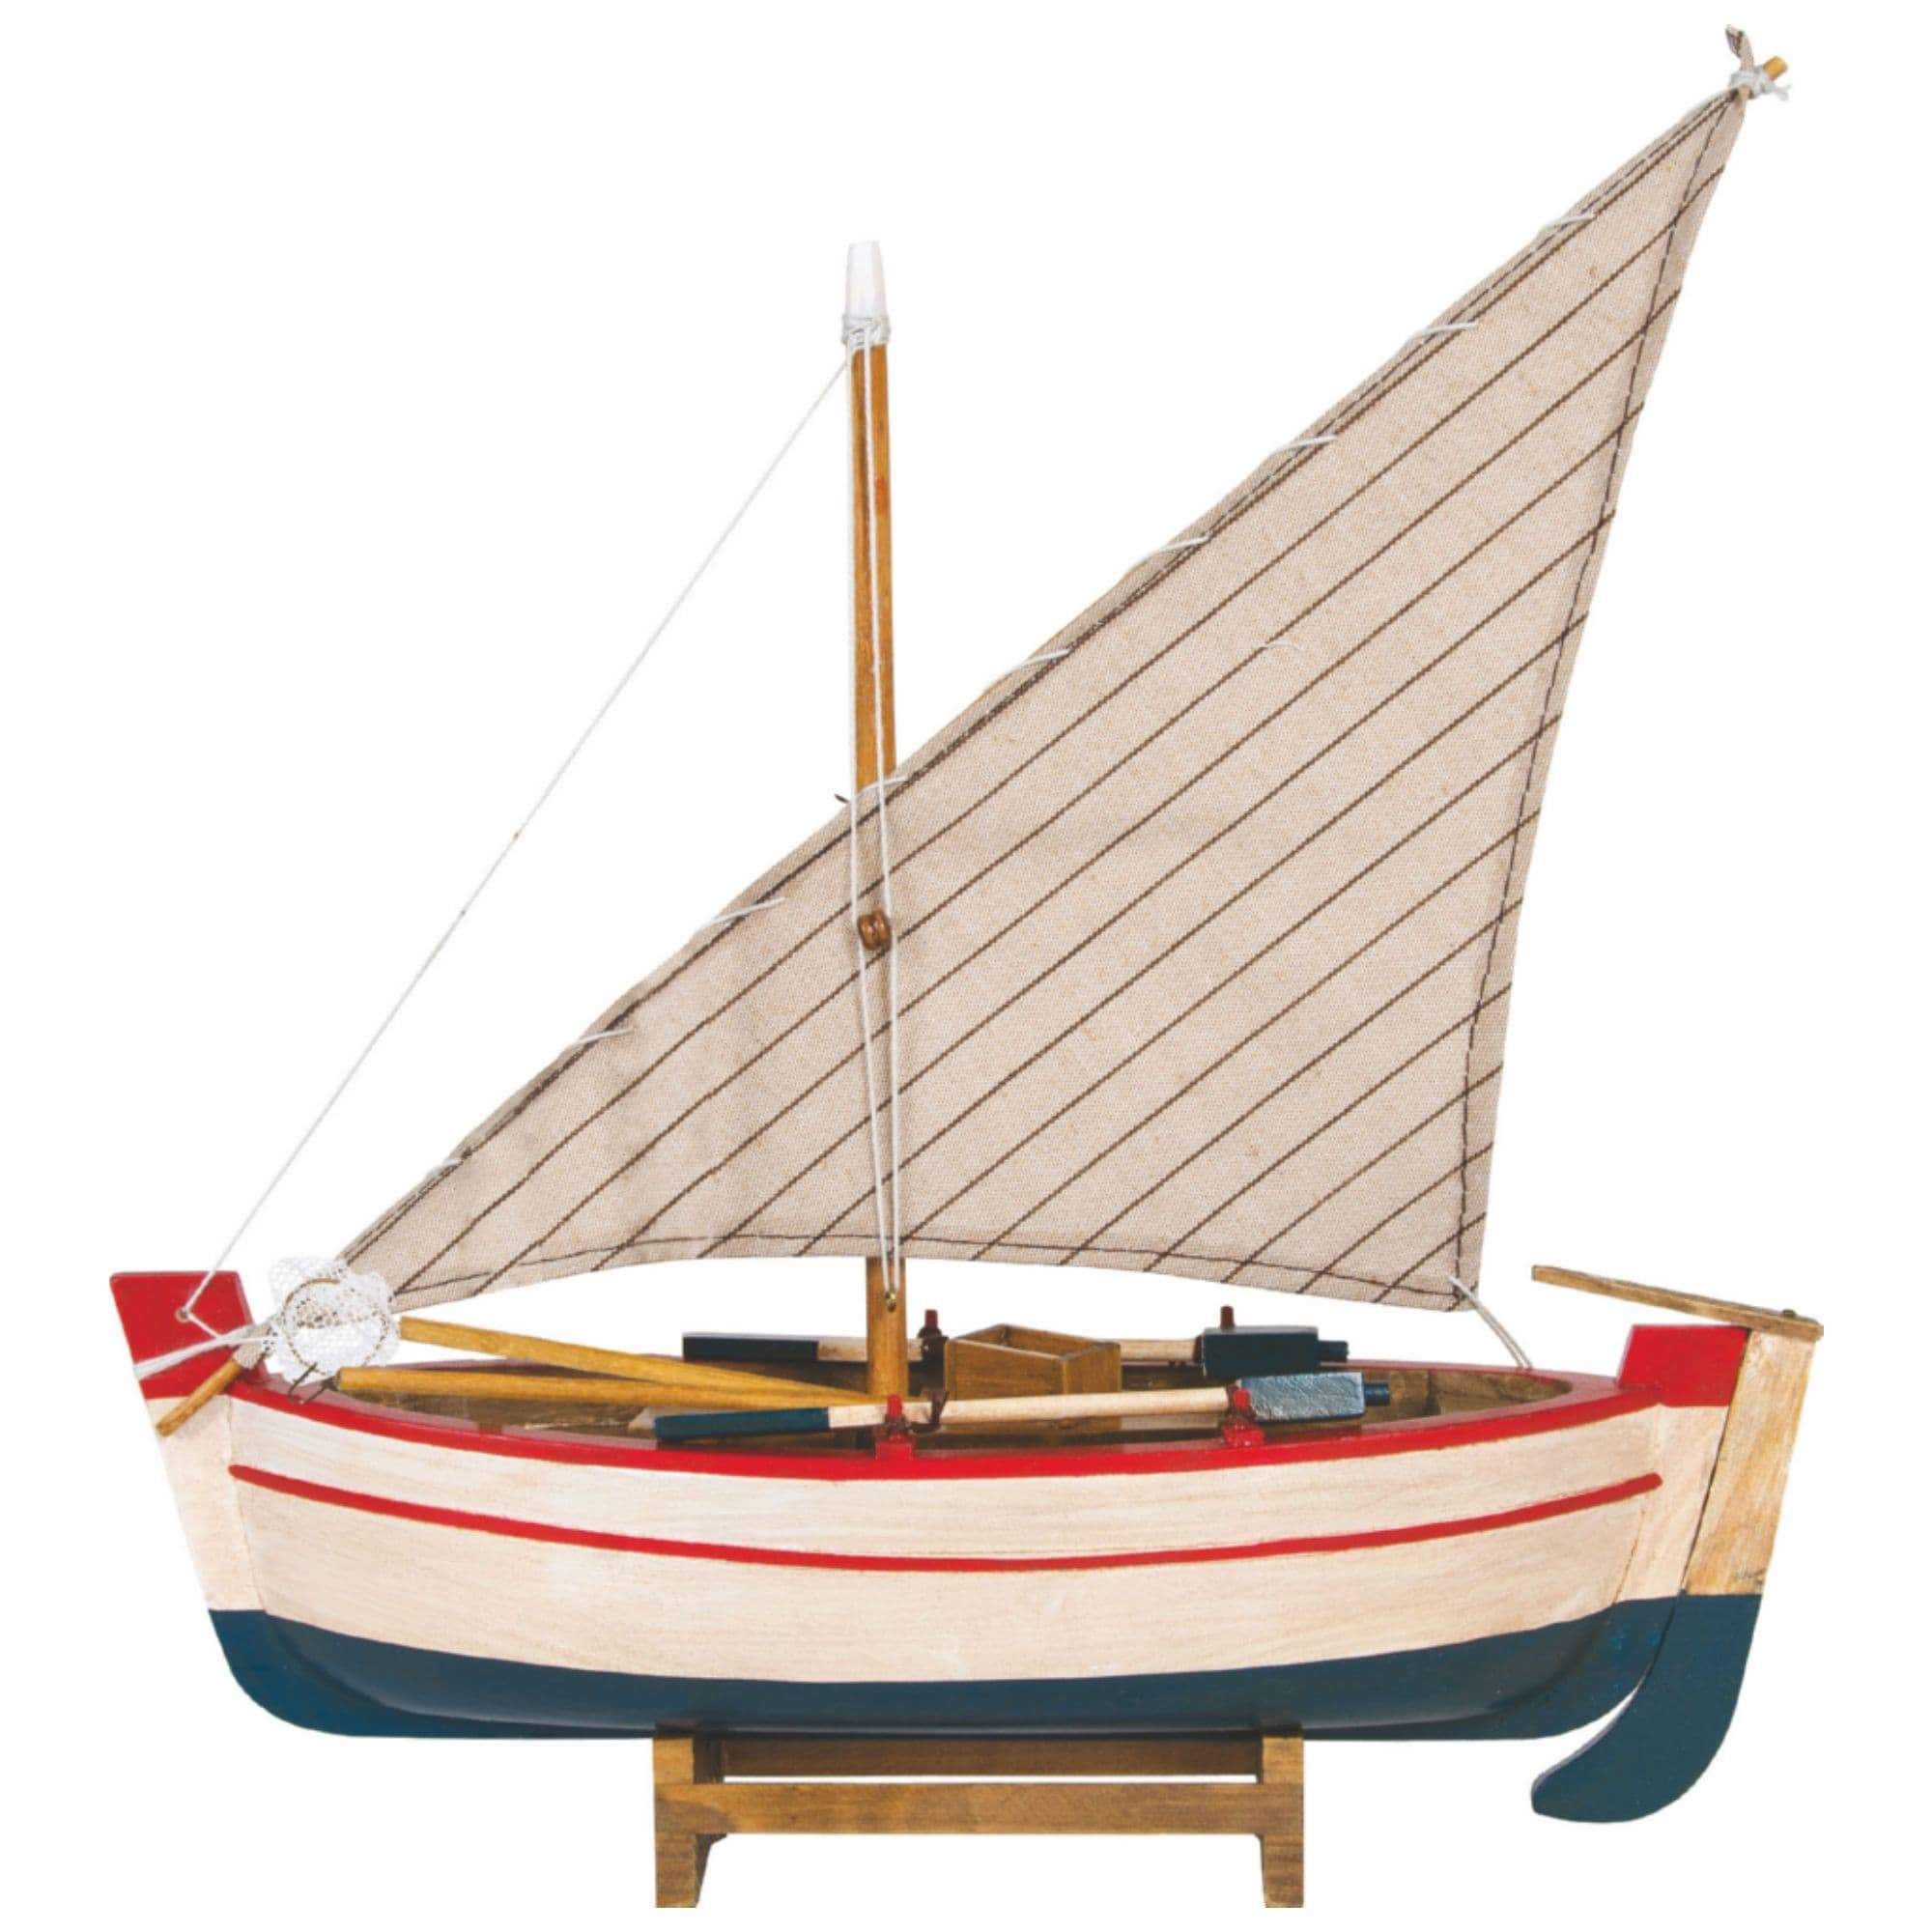 Llaud I – Model Boat – Default